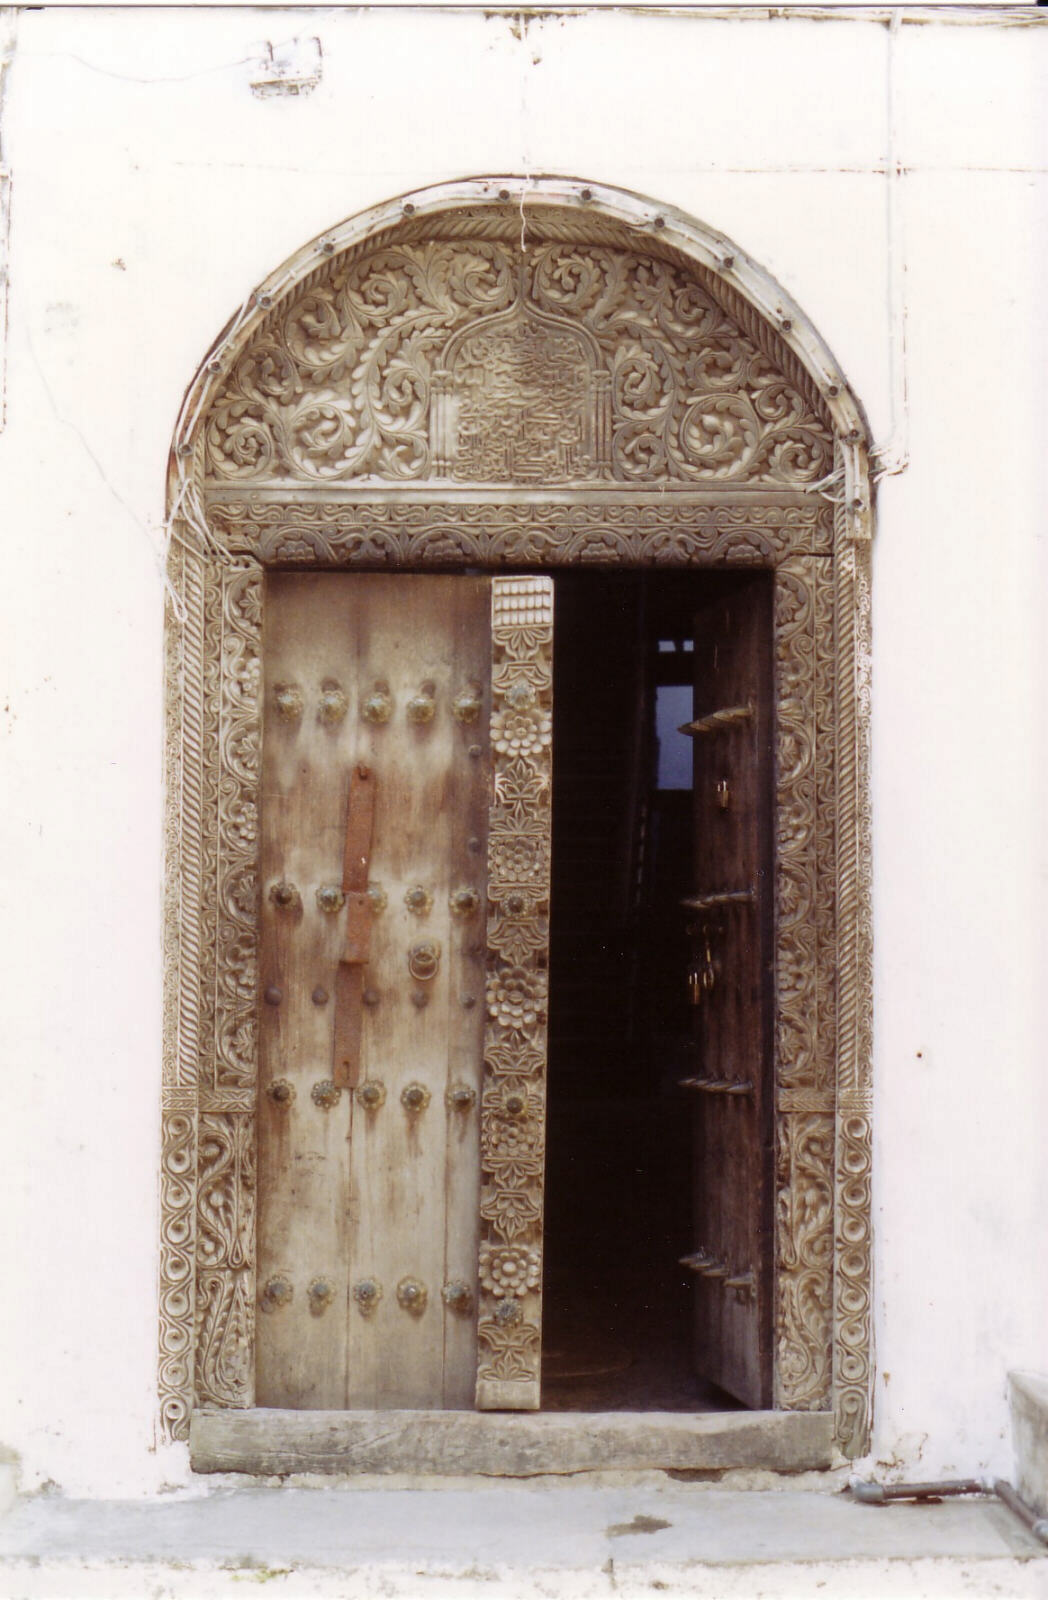 A doorway in the old town, Zanzibar